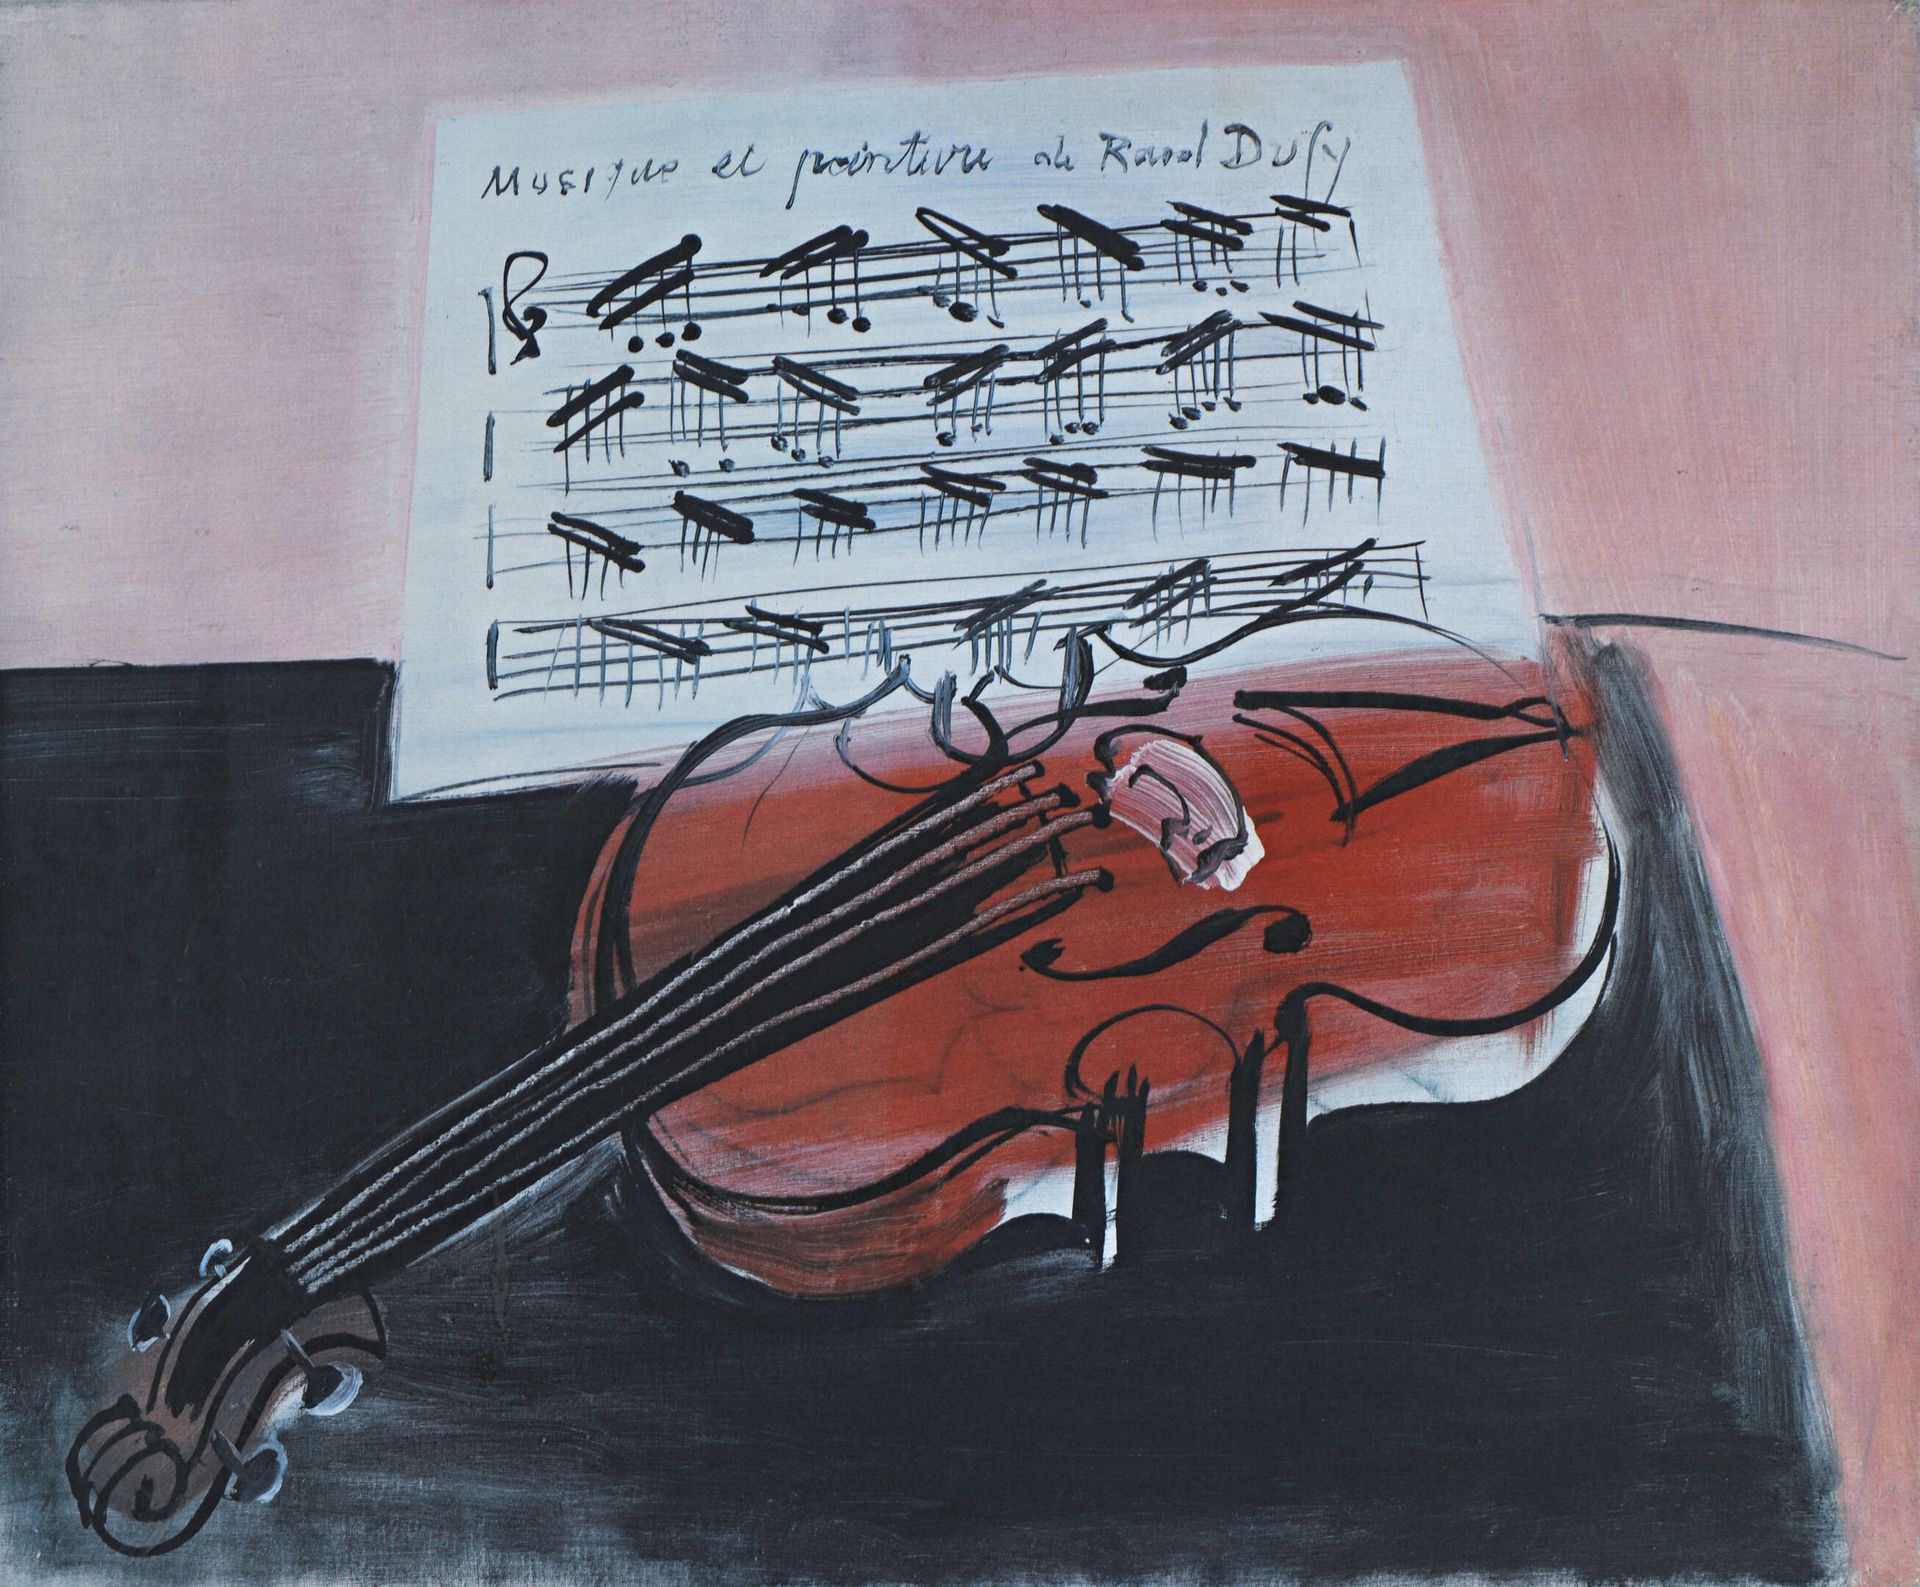 Null Después de RAOUL DUFY
"Música y pintura".
Offset sobre papel.
49 x 69 cm.